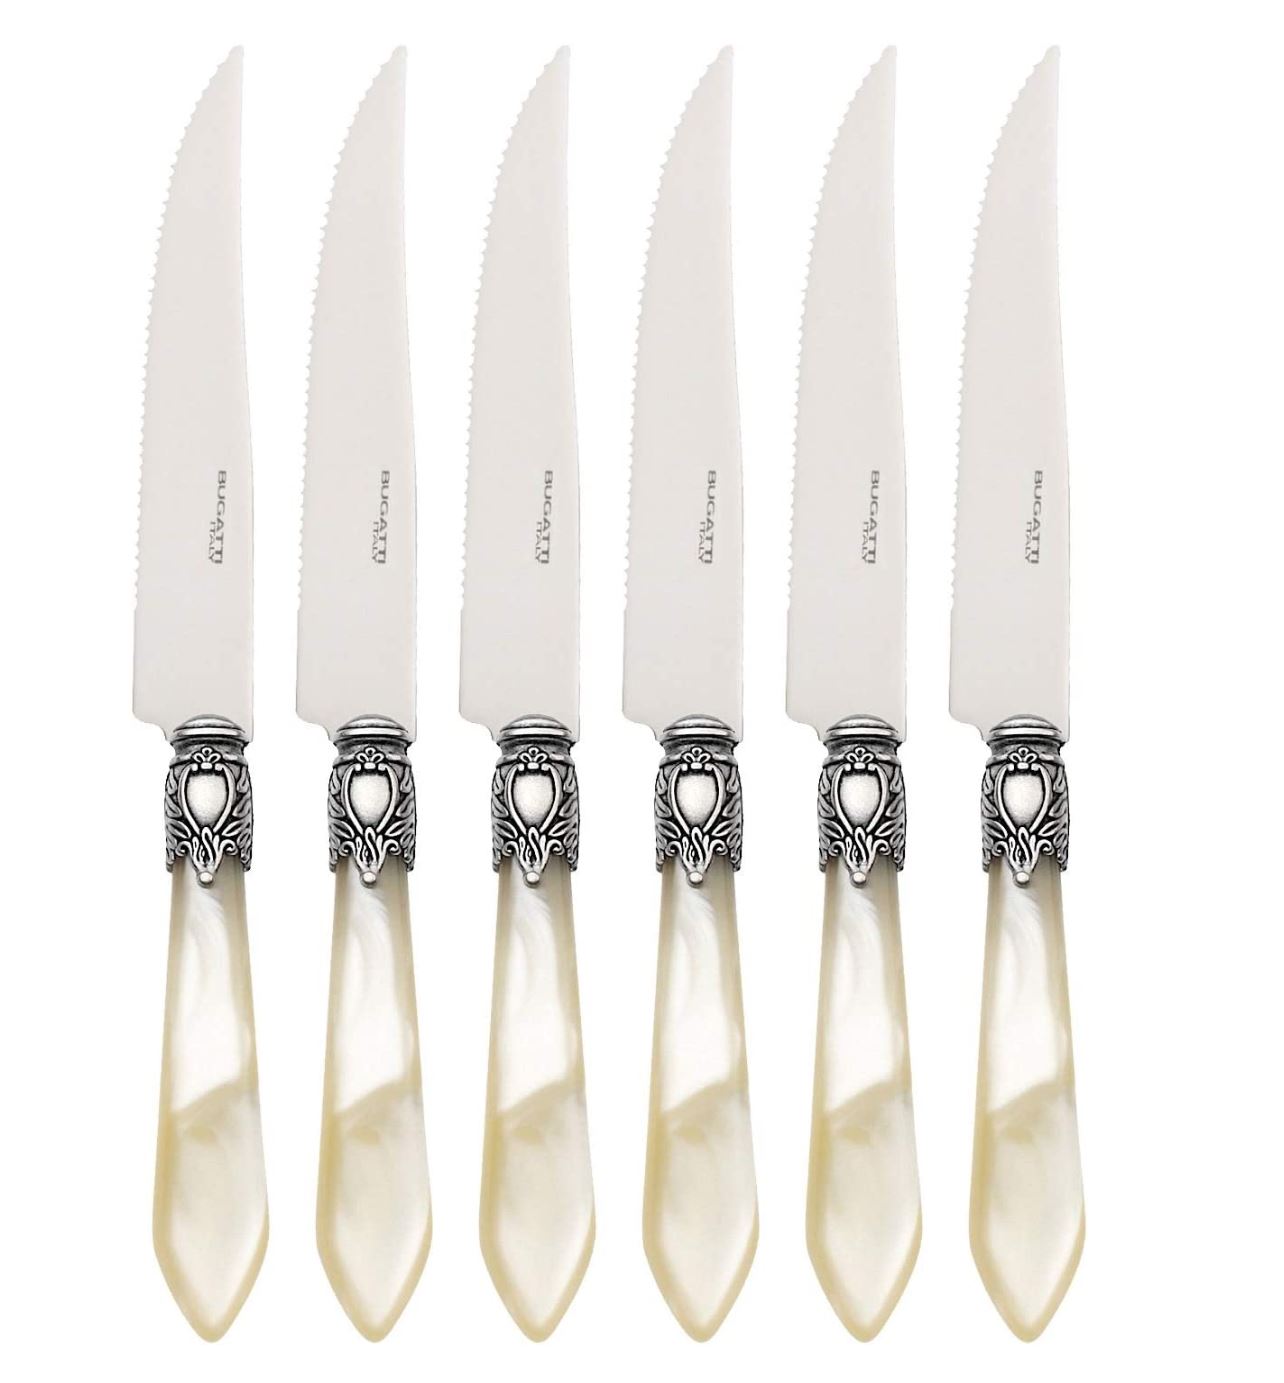 Oxford Antique Steak Knives Set - Ivory